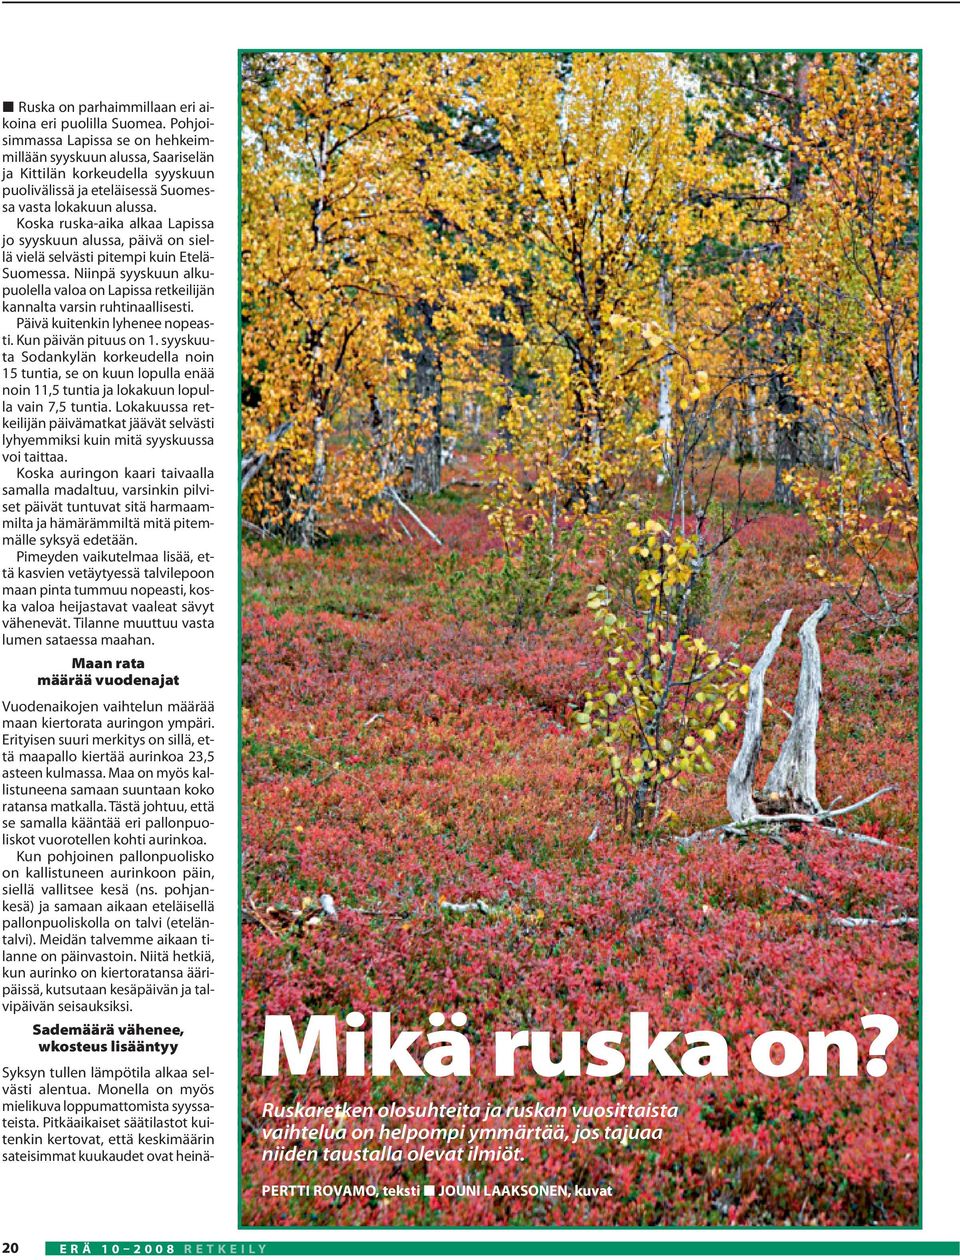 Koska ruska-aika alkaa Lapissa jo syyskuun alussa, päivä on siellä vielä selvästi pitempi kuin Etelä- Suomessa.